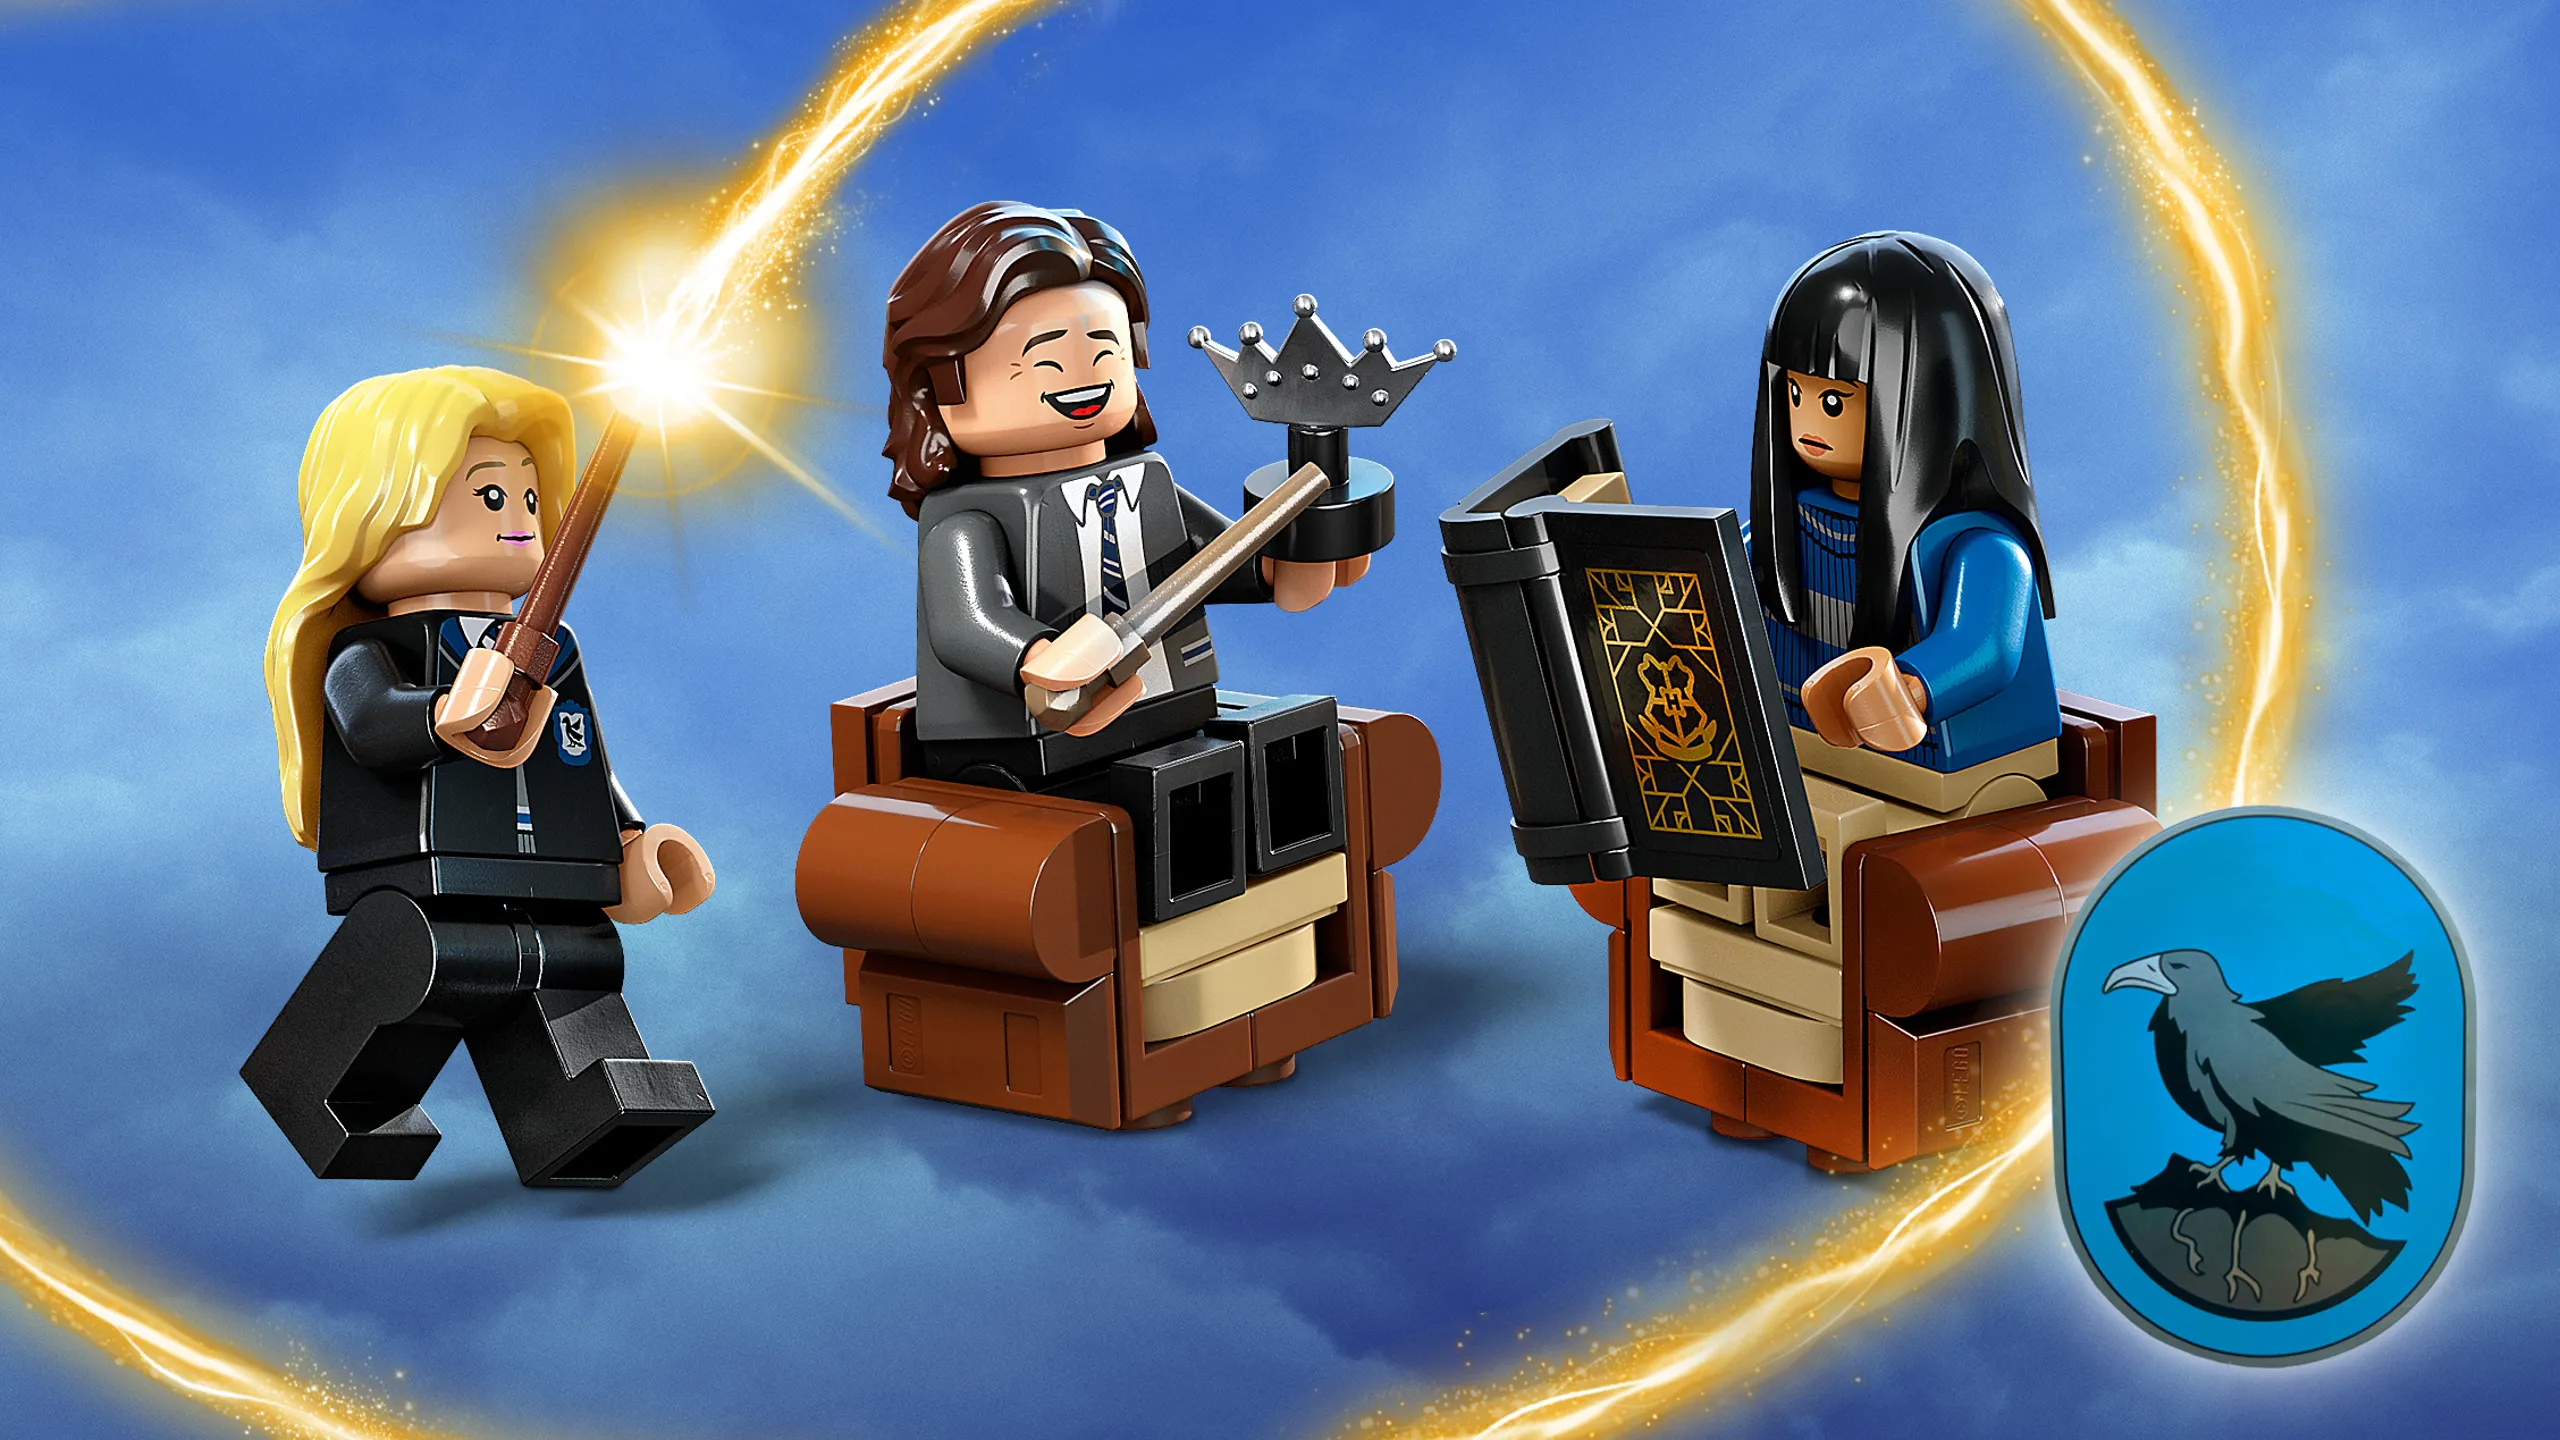 LEGO Harry Potter Summer 2023: Gringotts, Battle of Hogwarts & more